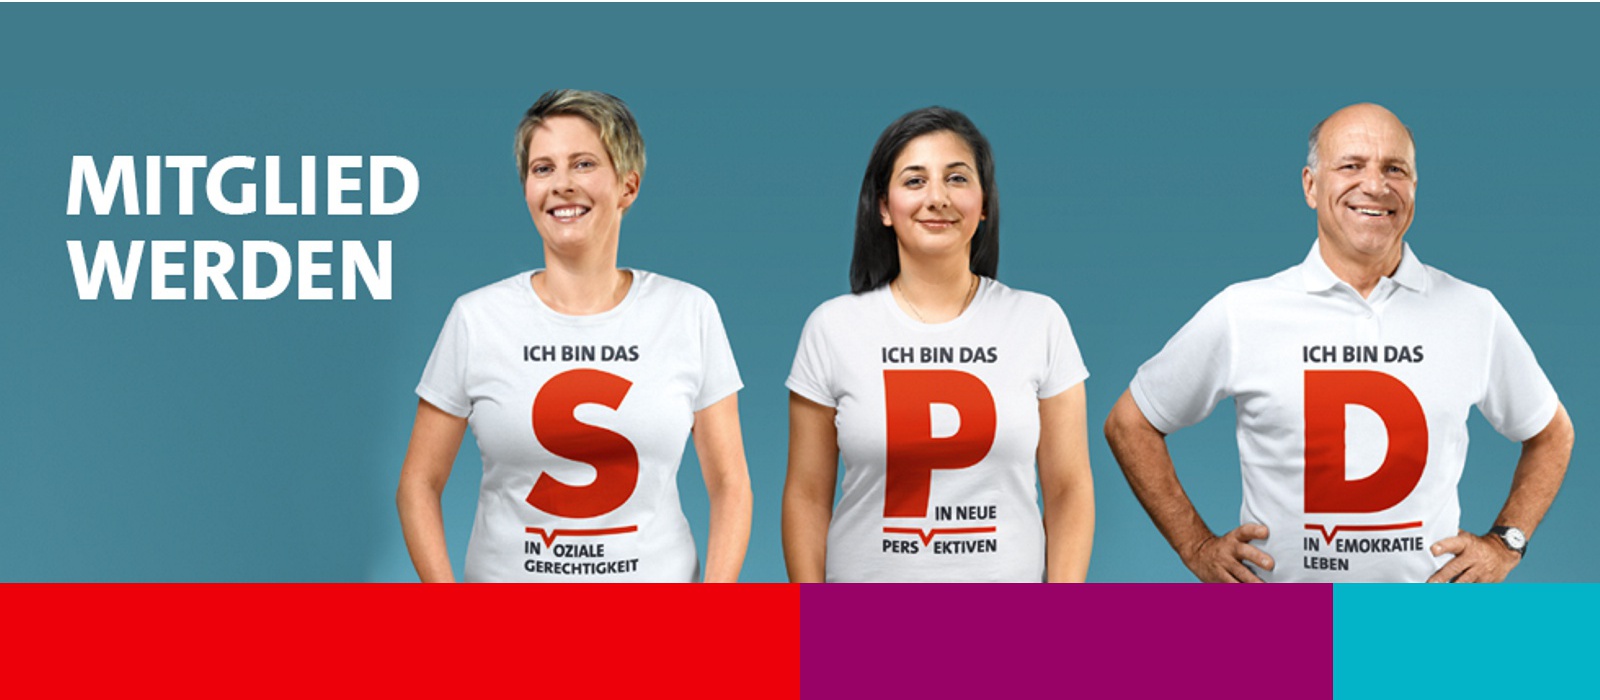 Eintreten - Mitglied werden in der SPD.